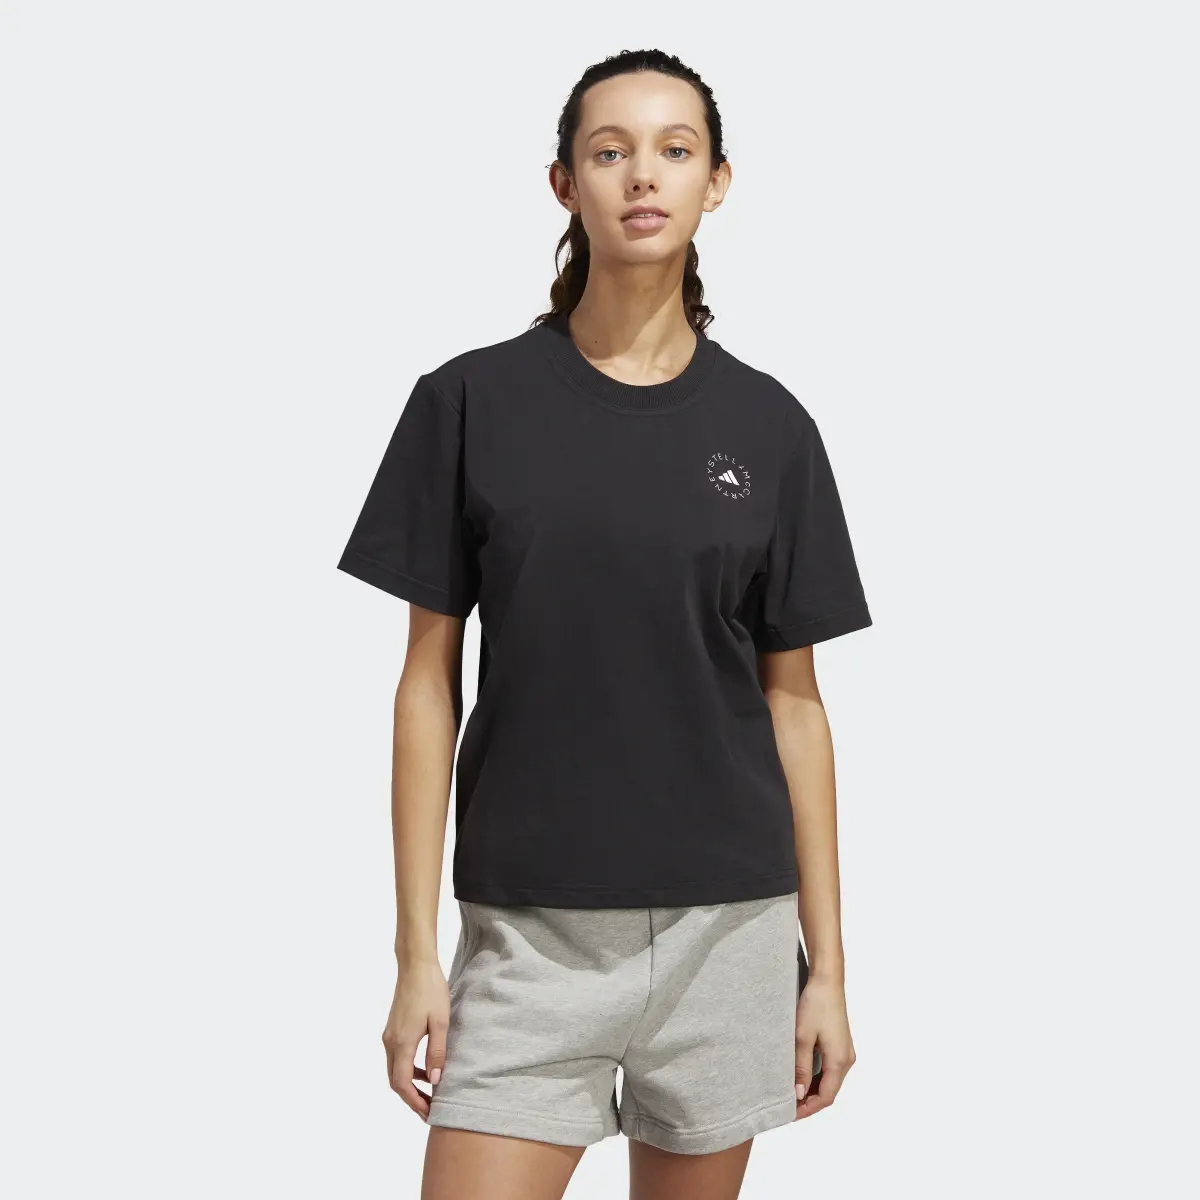 Adidas T-shirt standard sportswear adidas by Stella McCartney TrueCasuals. 2